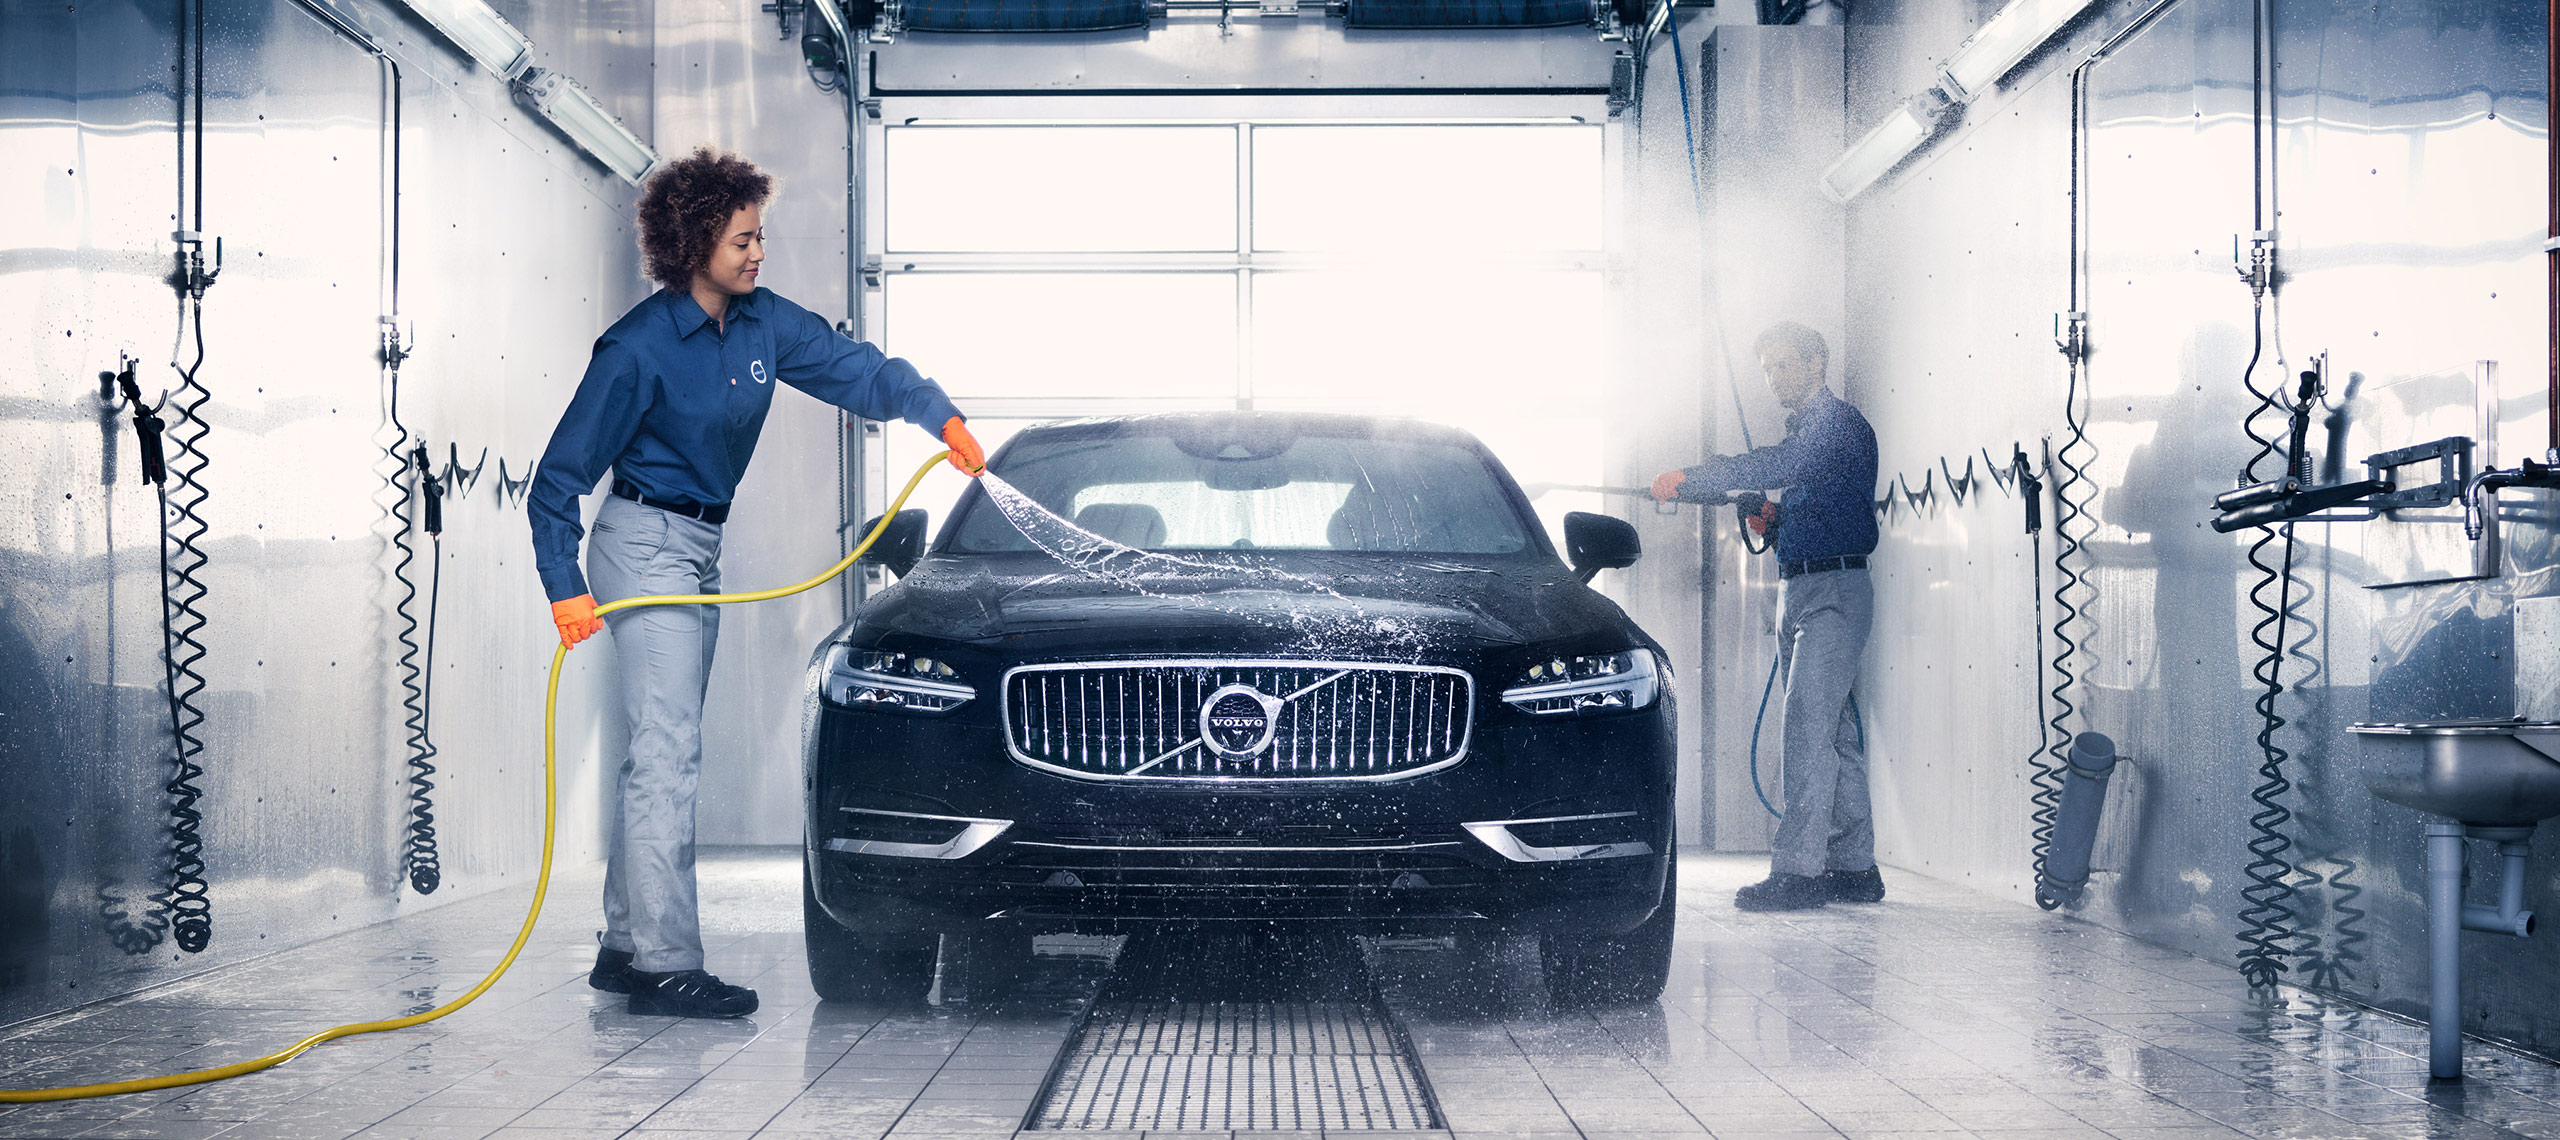 Volvotekniker tvättat Volvo i verkstad